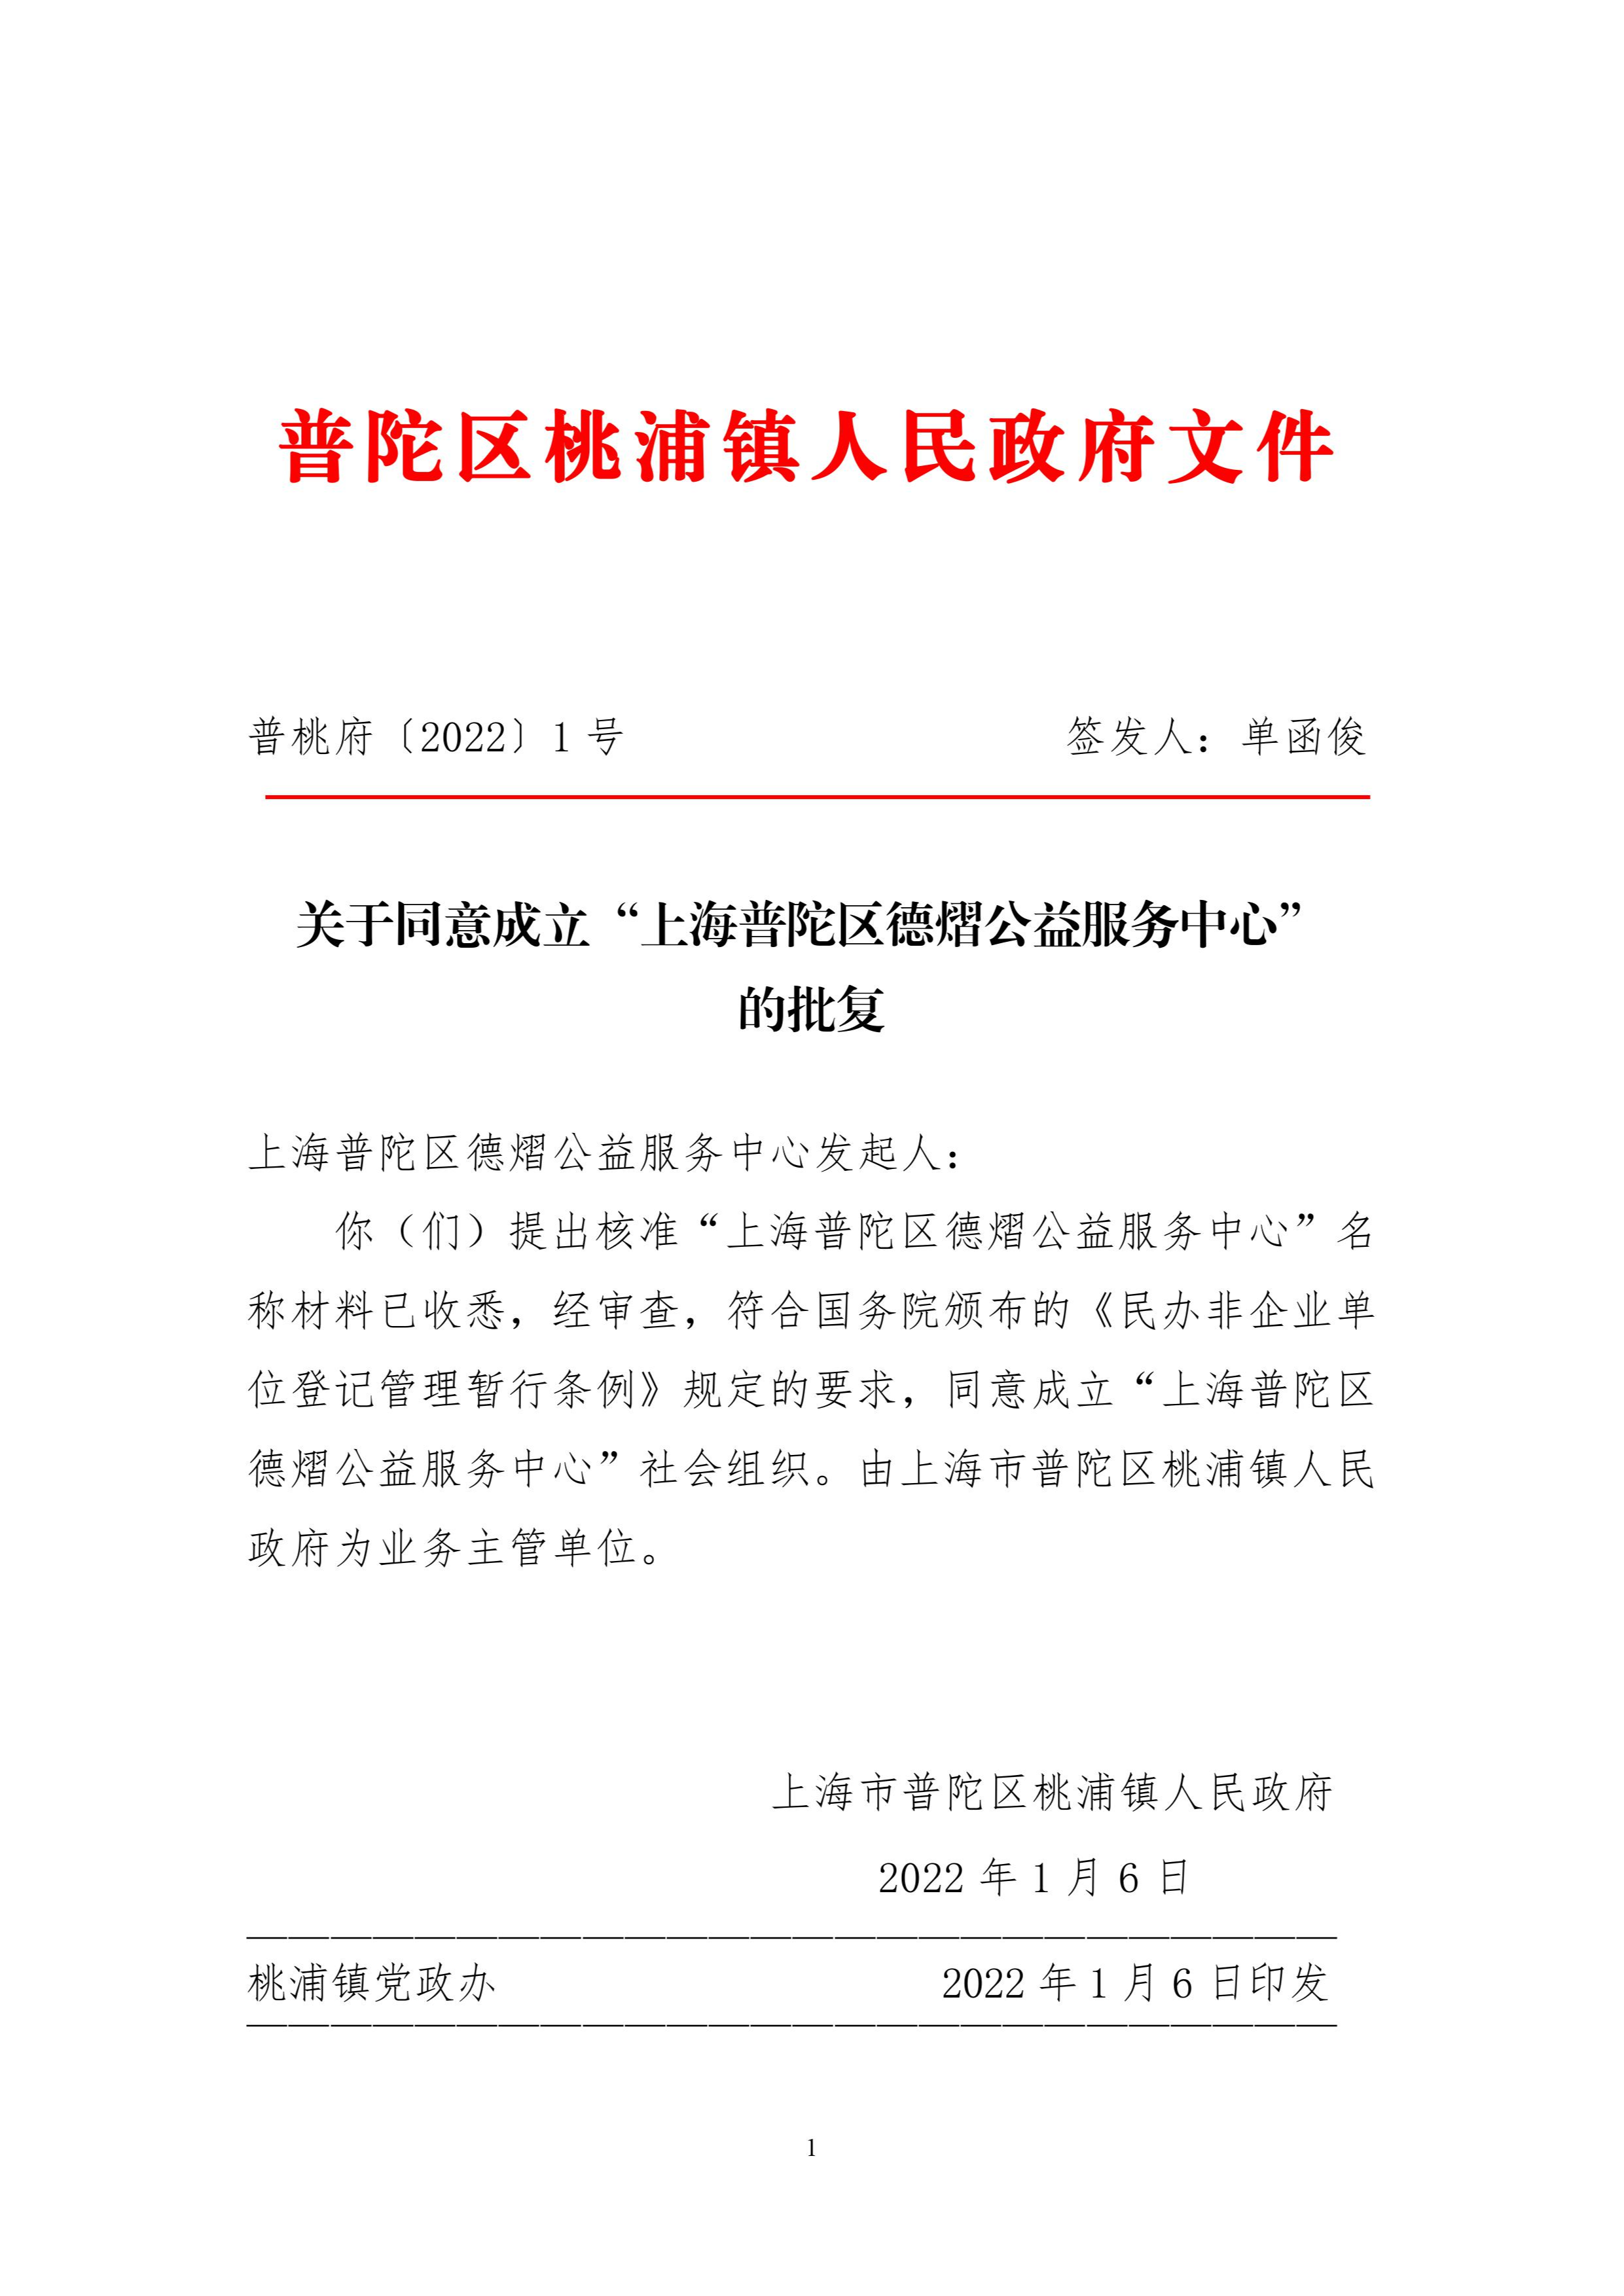 关于同意成立“上海普陀区德熠公益服务中心”的批复